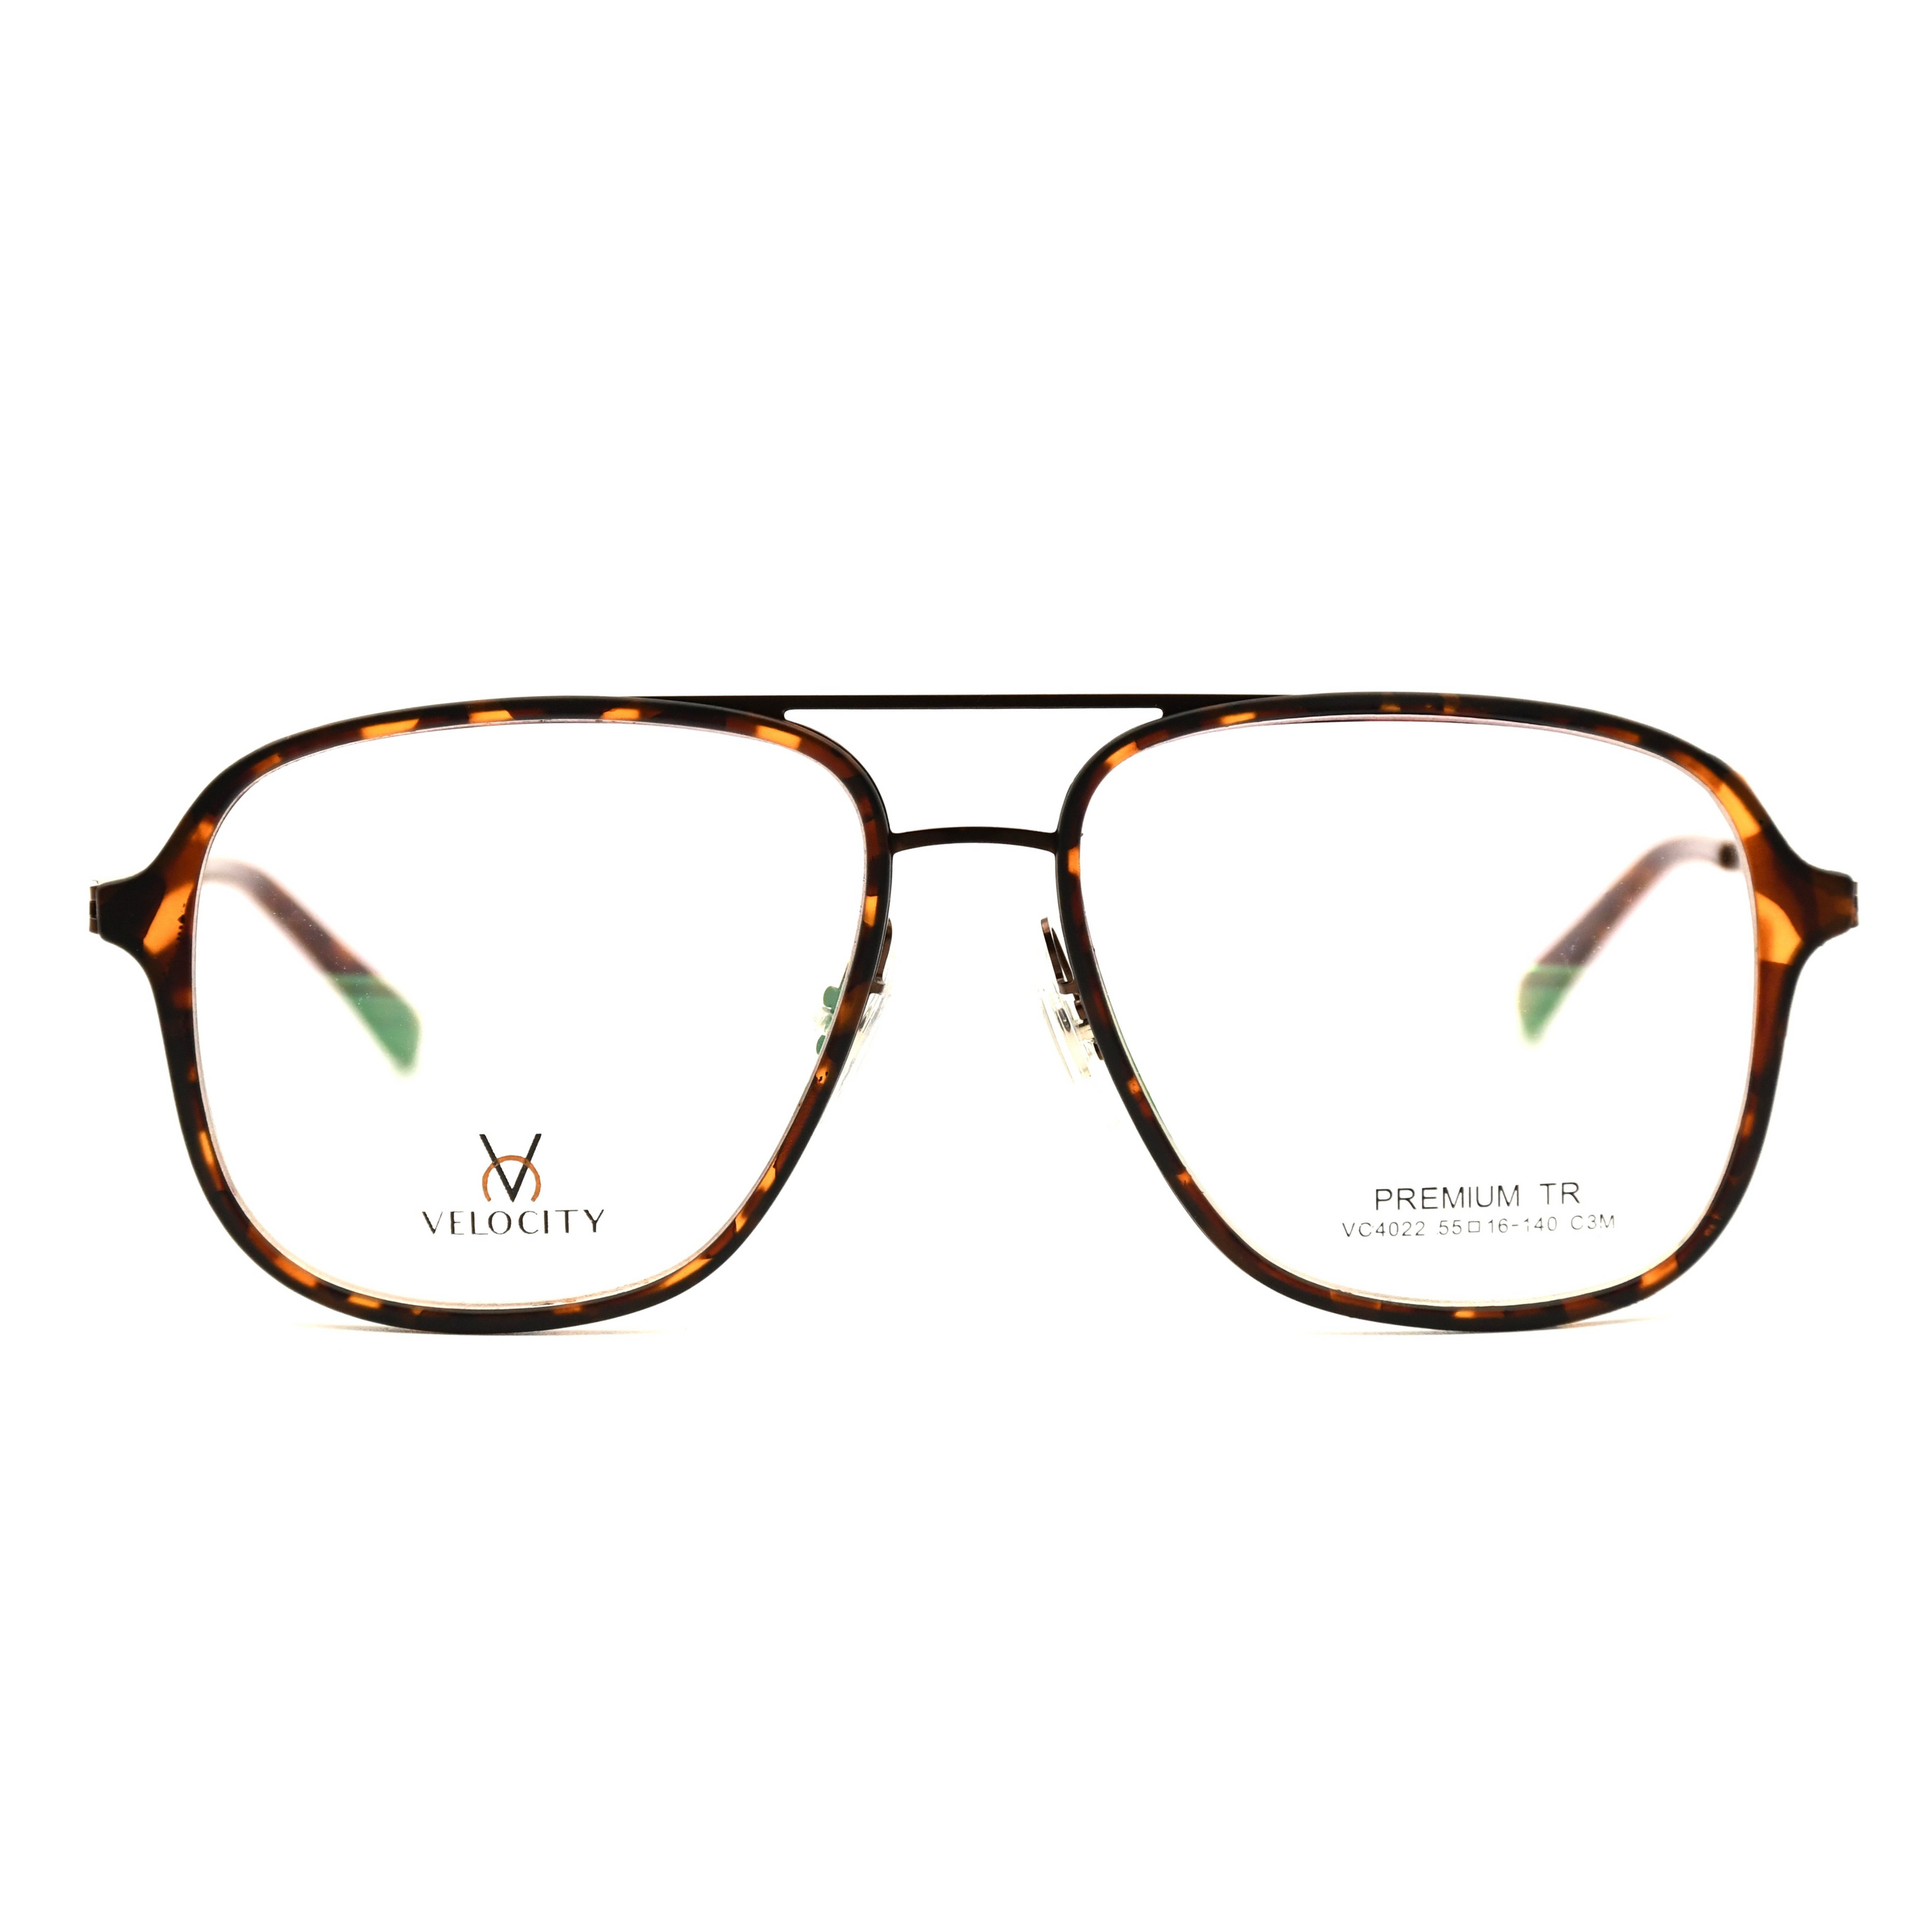 Velocity Rectangle Full Rim Eyeglasses - 4022-C3M